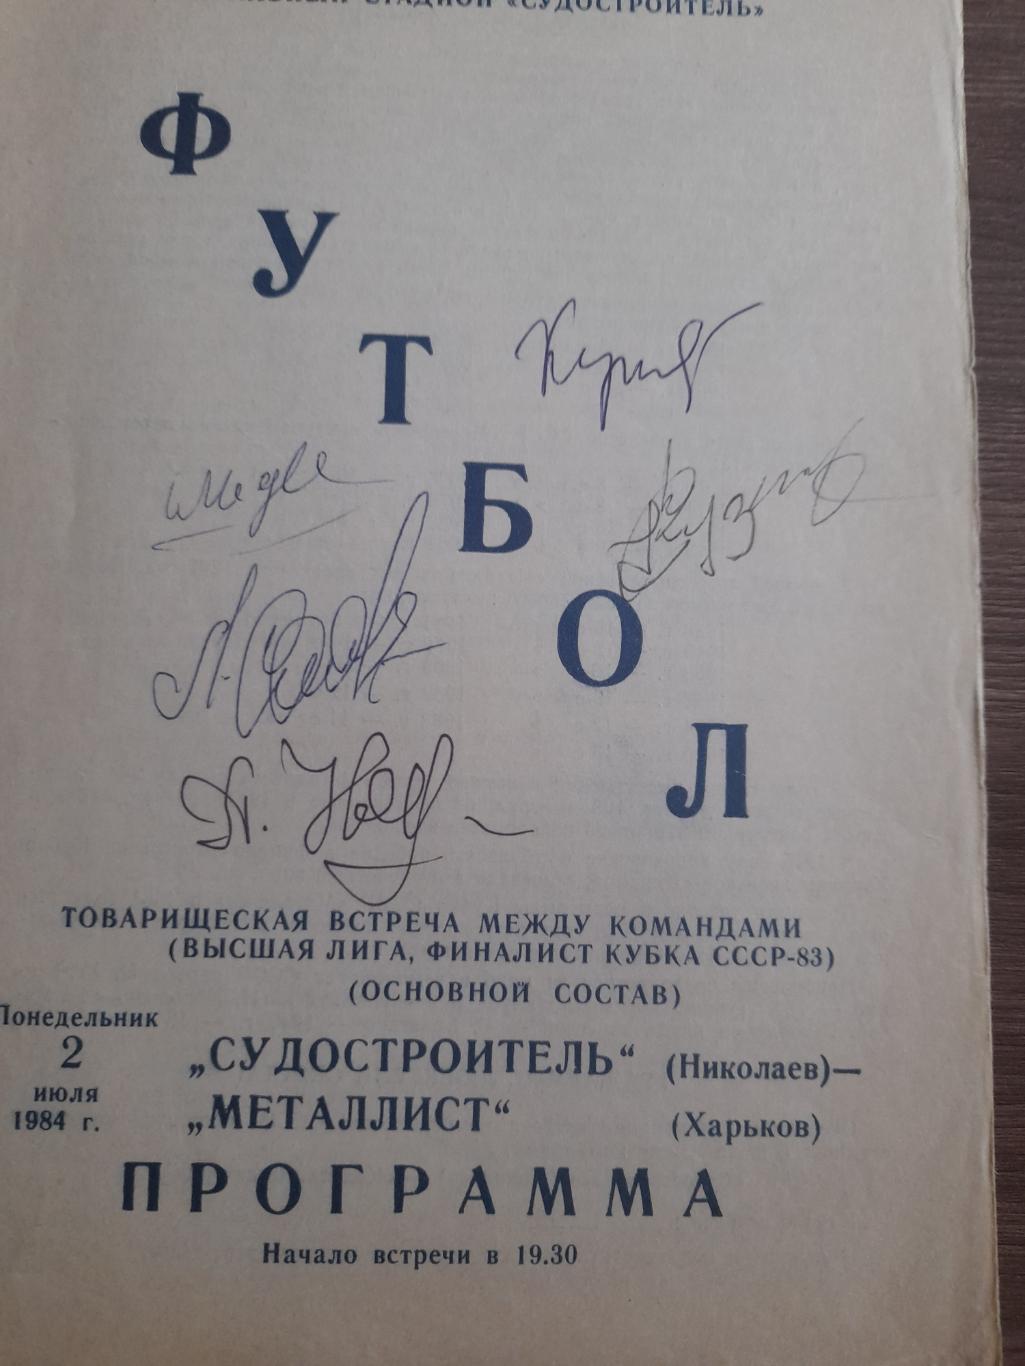 Судостроитель Николаев - Металлист Харьков 1984 ТМ автографы